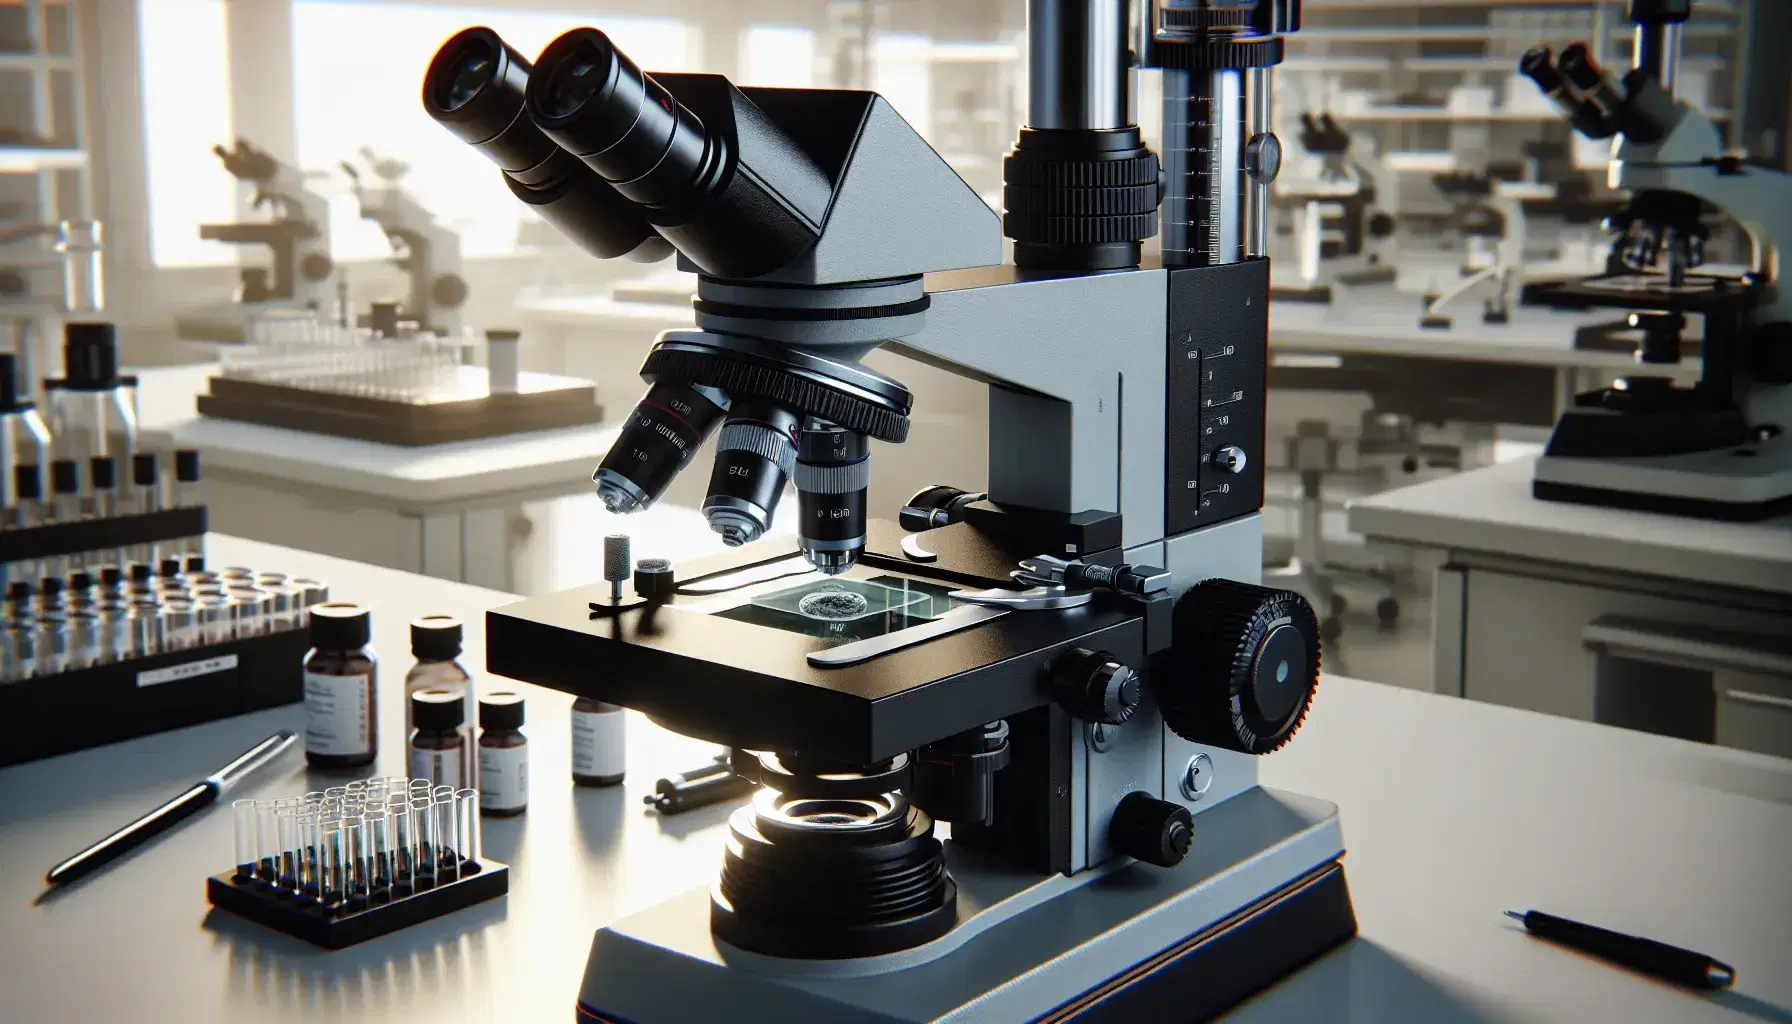 Microscopio óptico de laboratorio con base negra, ajustes plateados y objetivos intercambiables, sobre una muestra en portaobjetos.